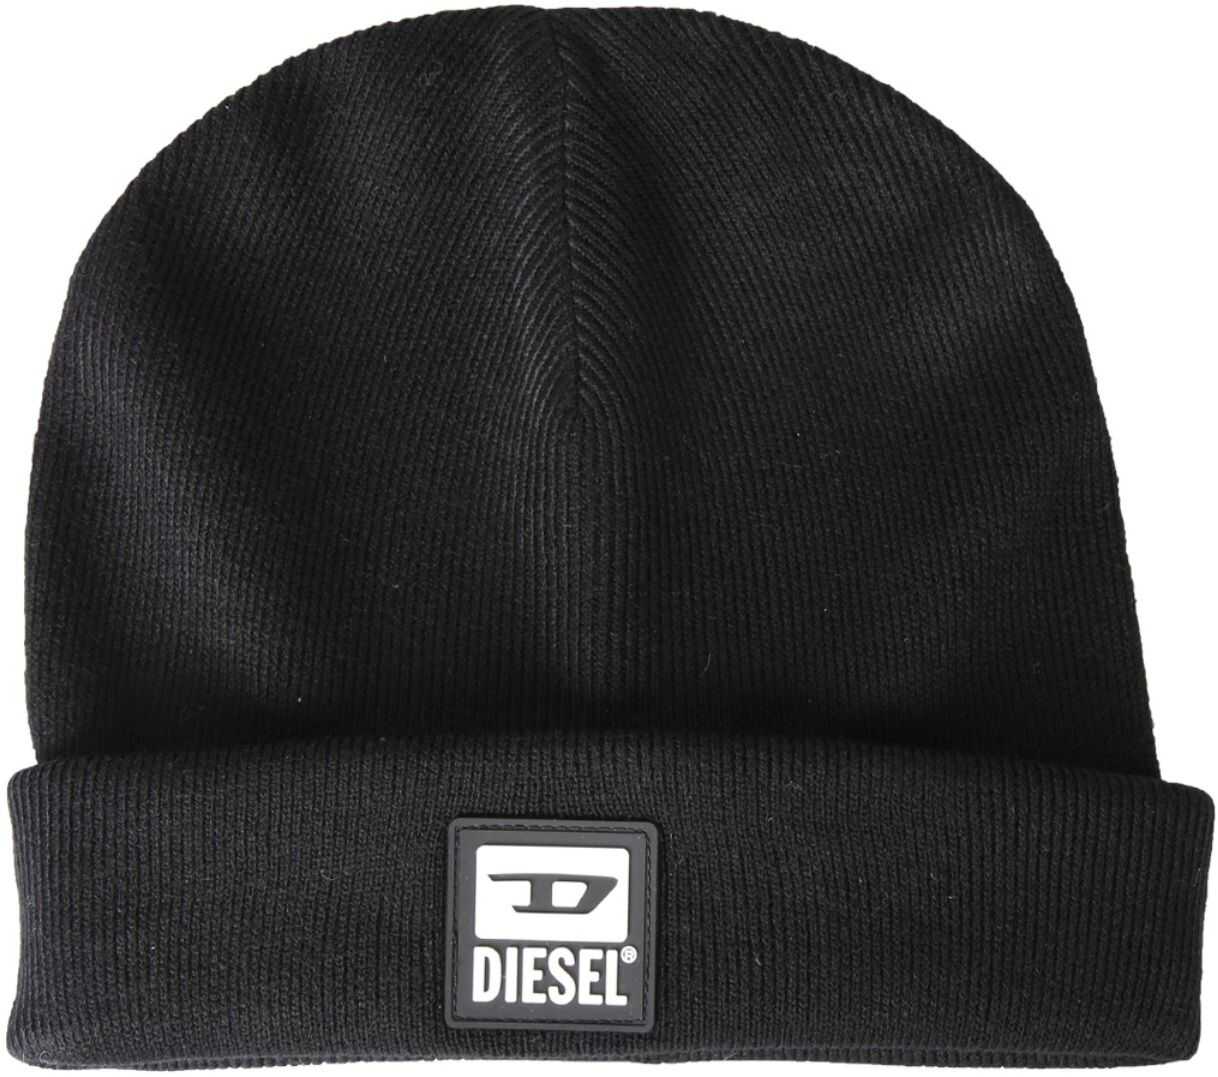 Diesel Knitted Hat BLACK